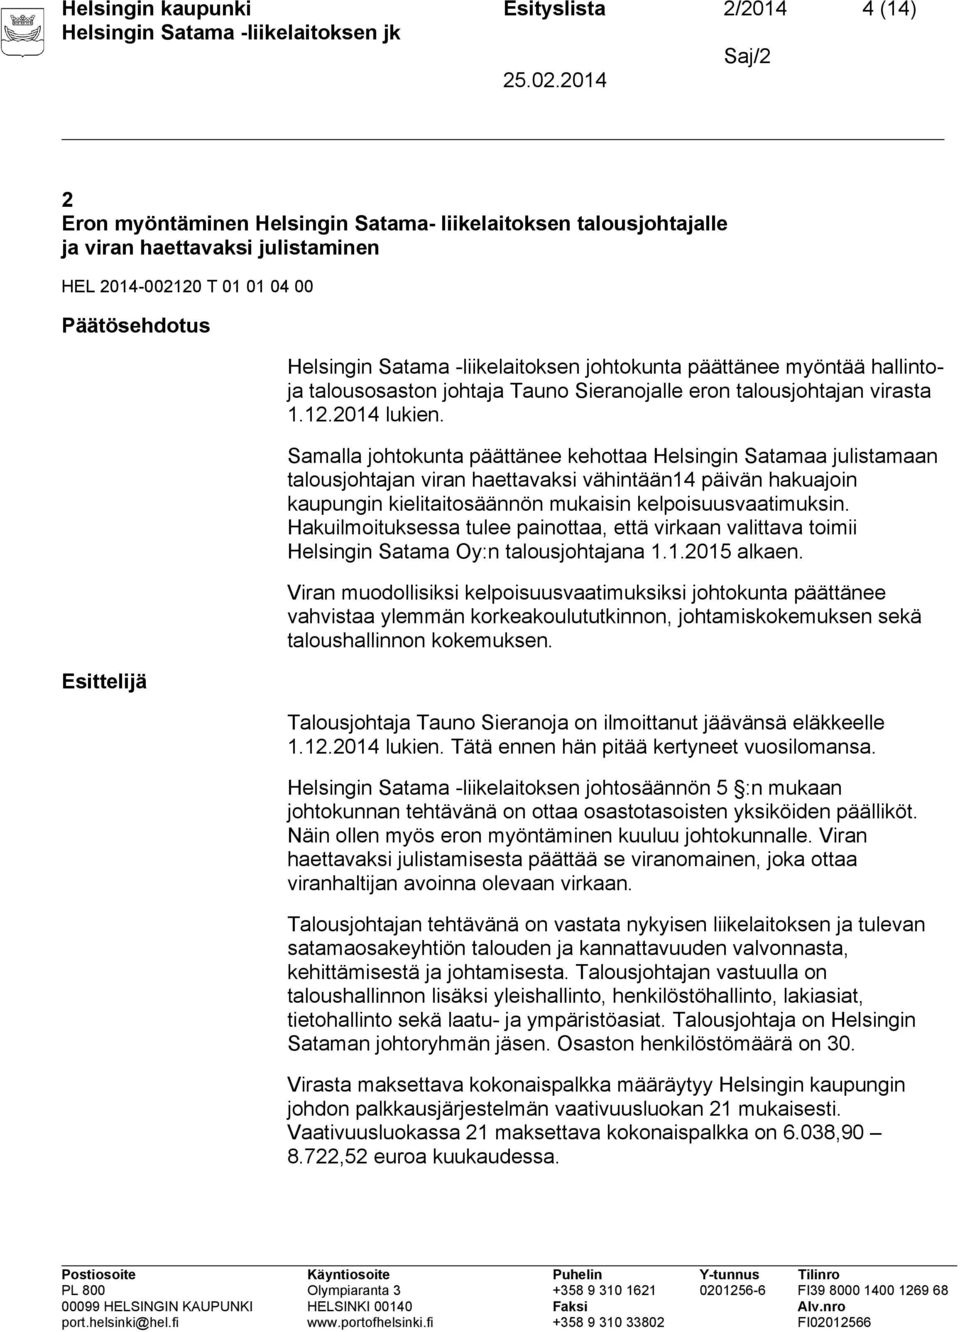 Samalla johtokunta päättänee kehottaa Helsingin Satamaa julistamaan talousjohtajan viran haettavaksi vähintään14 päivän hakuajoin kaupungin kielitaitosäännön mukaisin kelpoisuusvaatimuksin.